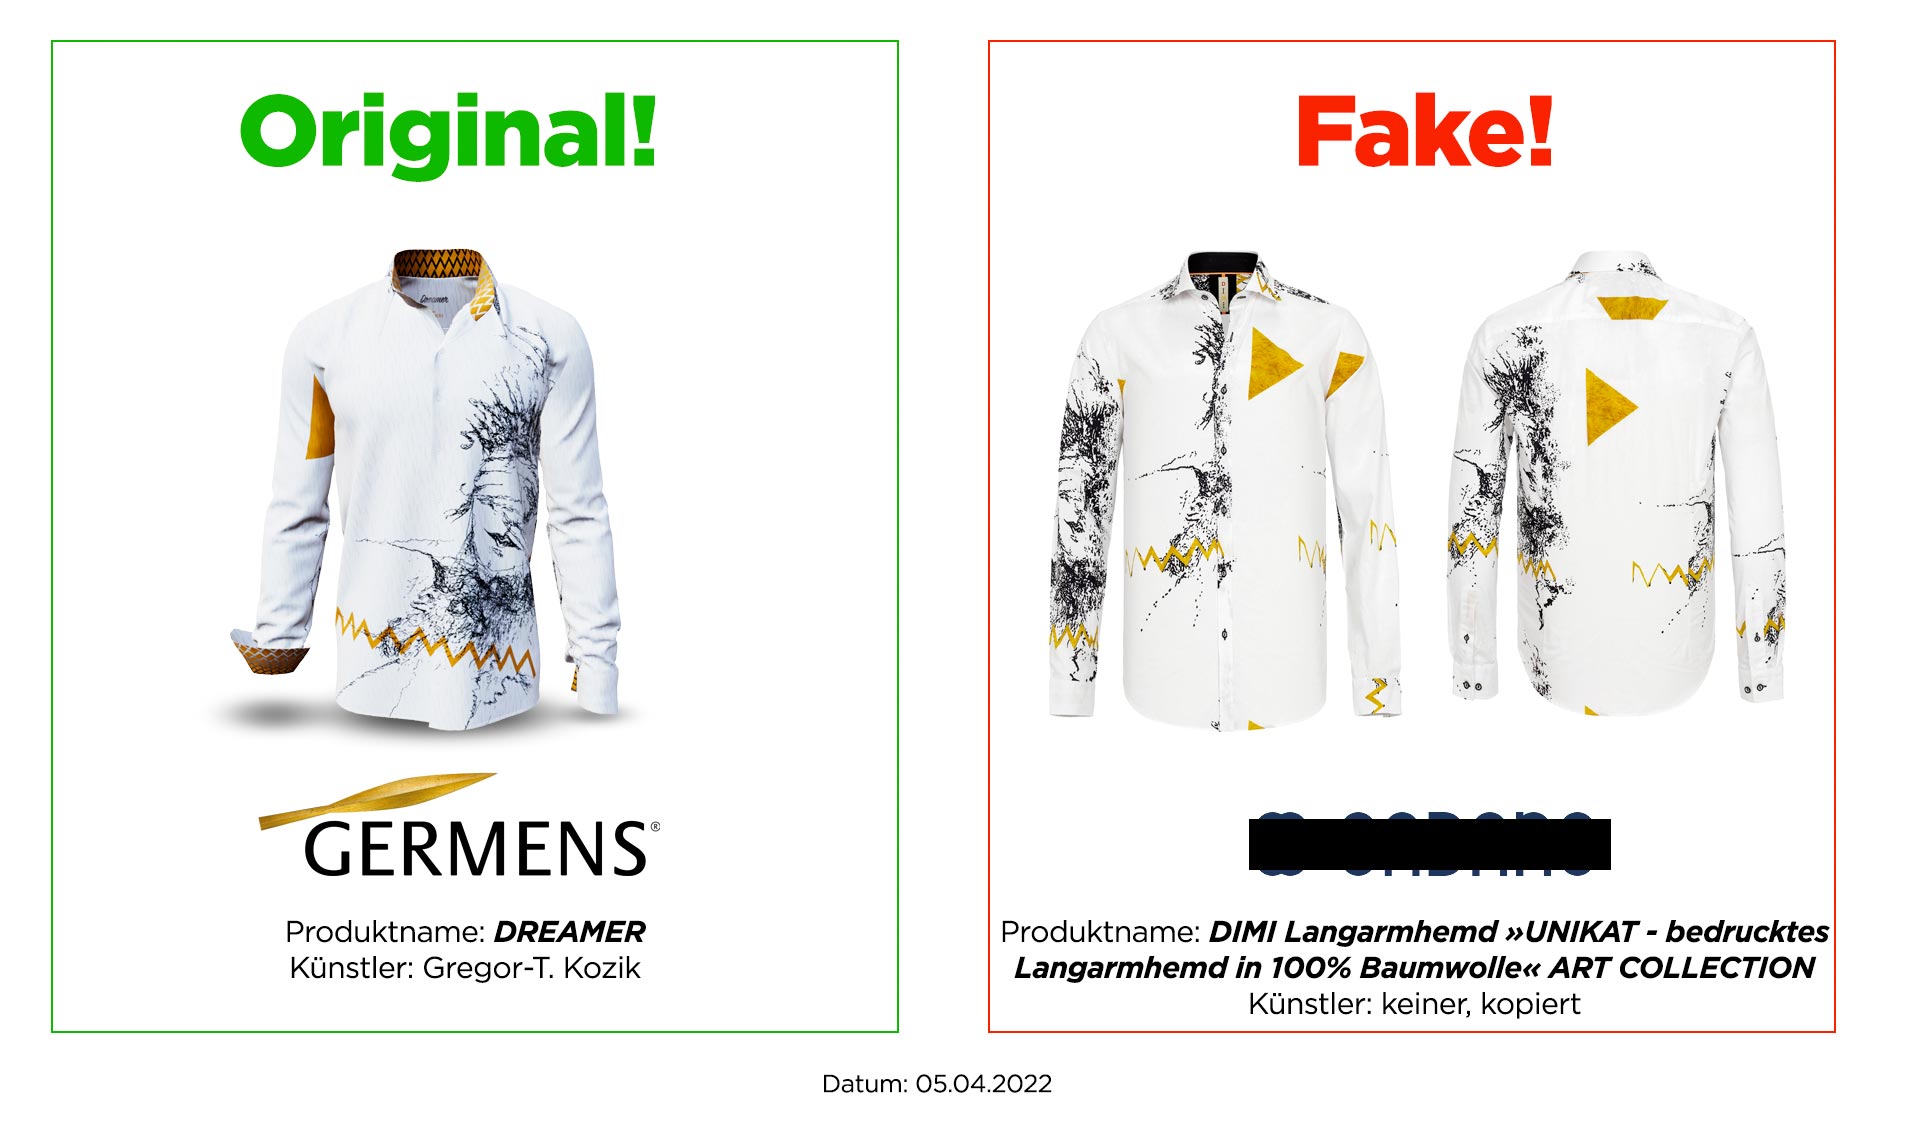 Original GERMENS® shirt DREAMER and plagiarism